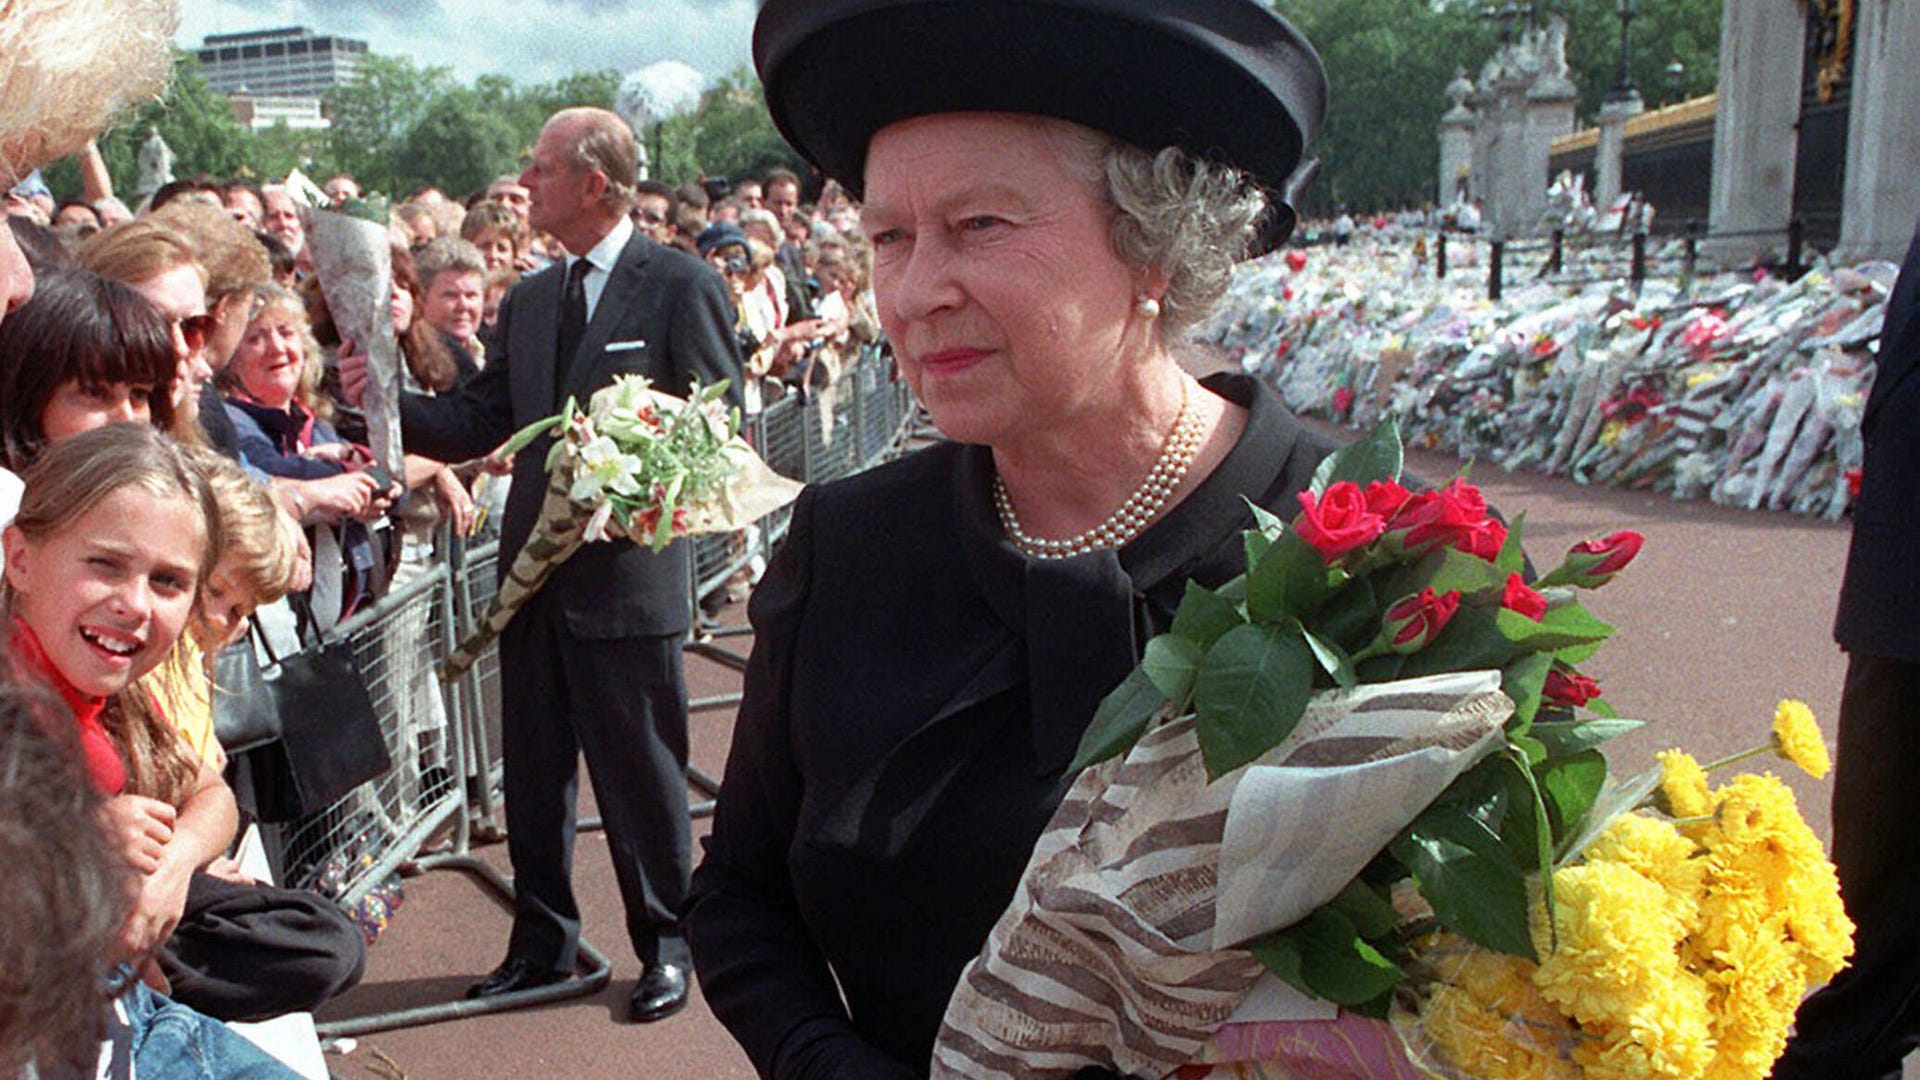 Queen Elizabeth II, Being the Queen